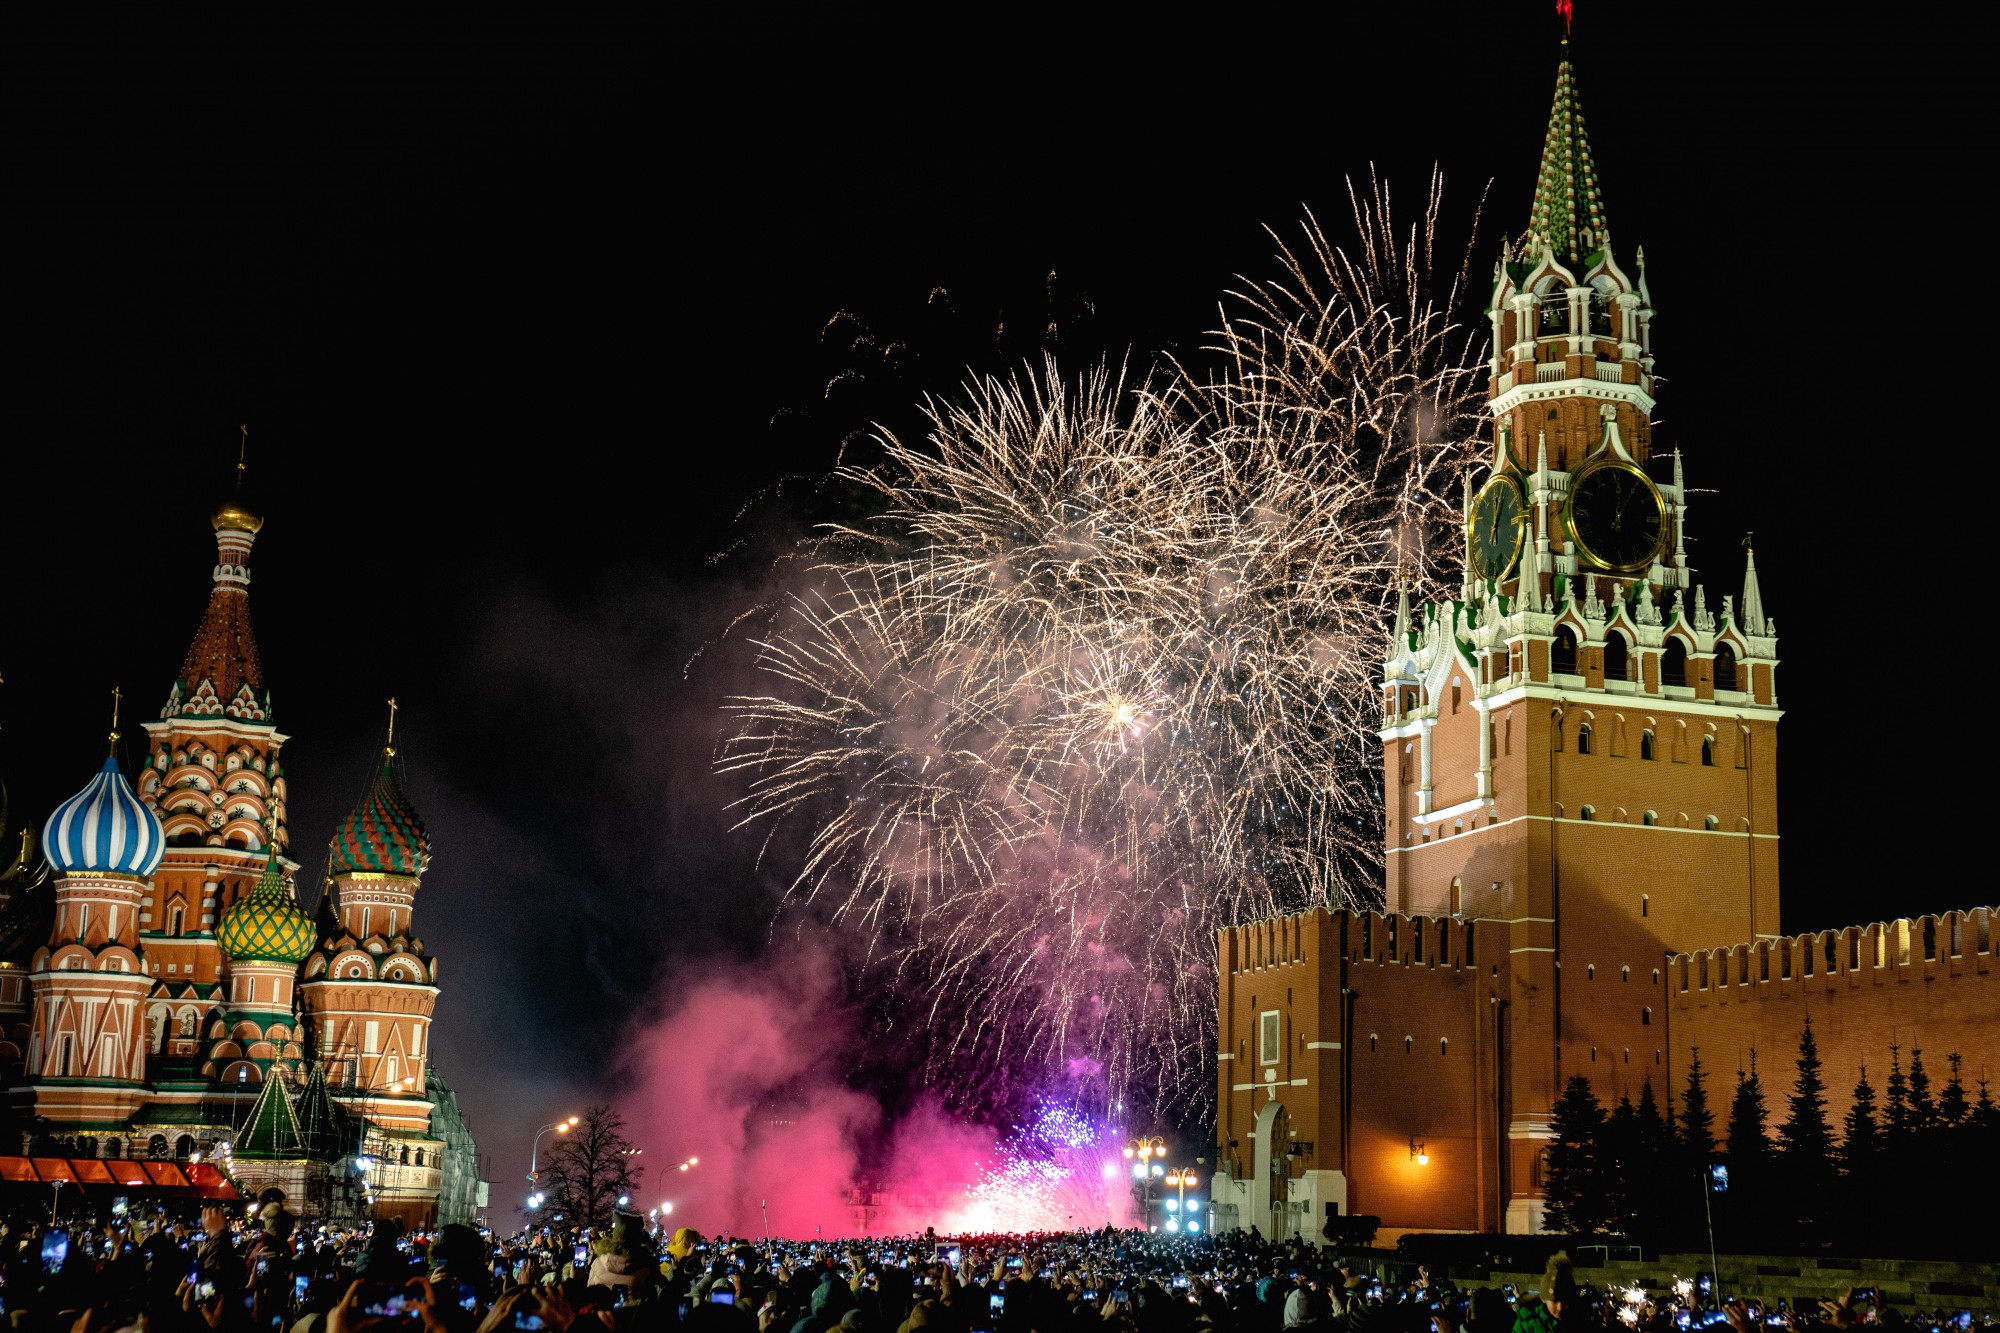 Путин поздравил россиян с Новым годом на фоне военных